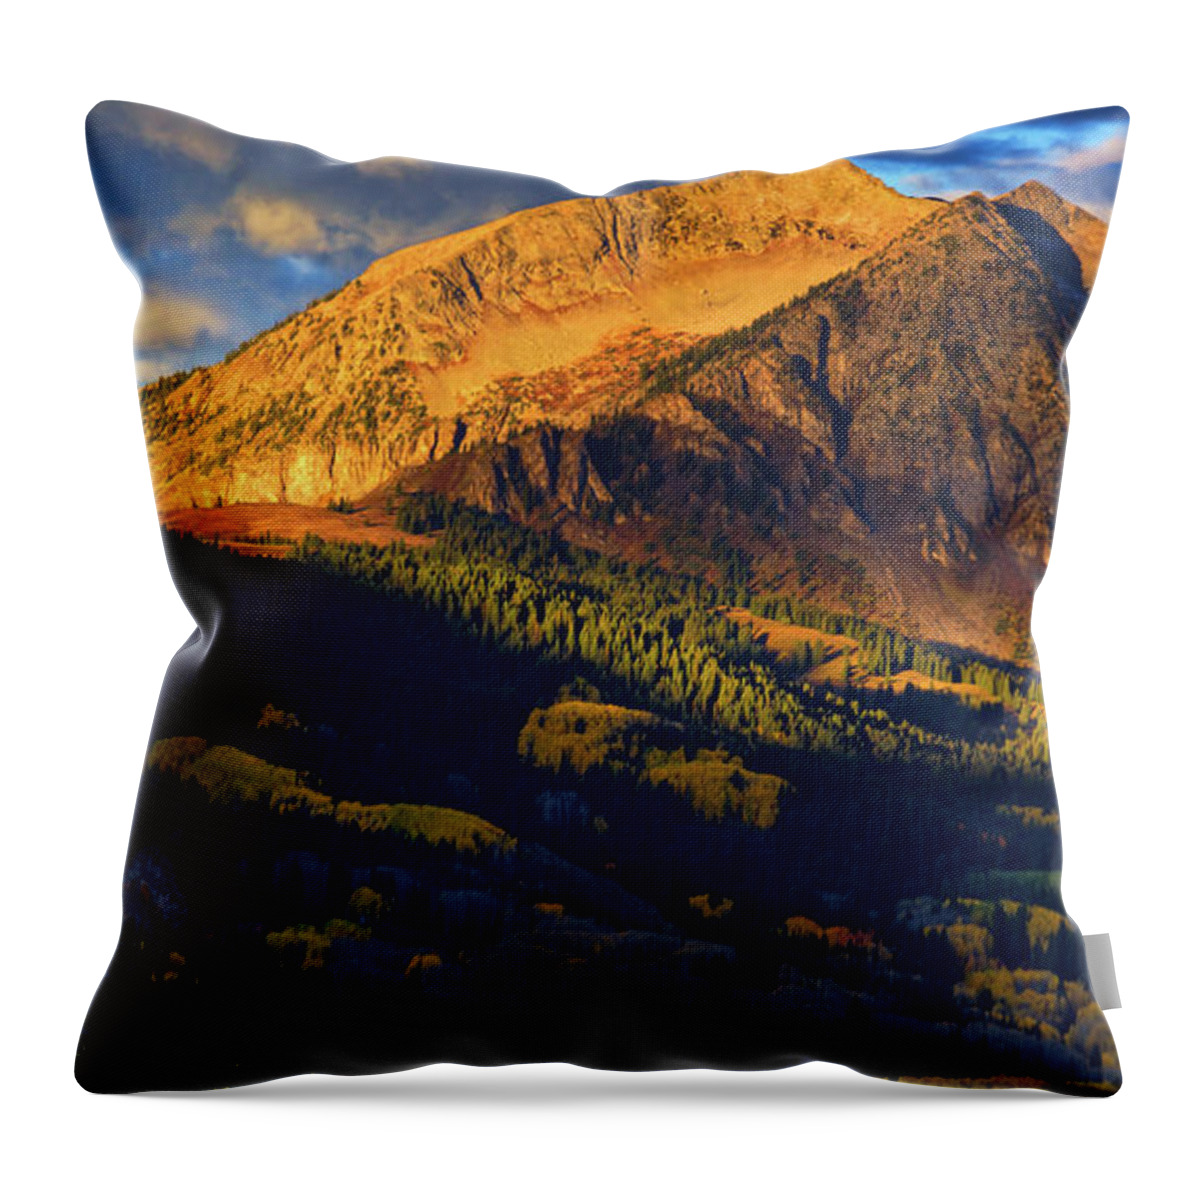 America Throw Pillow featuring the photograph Sunlight Along The Mountain by John De Bord